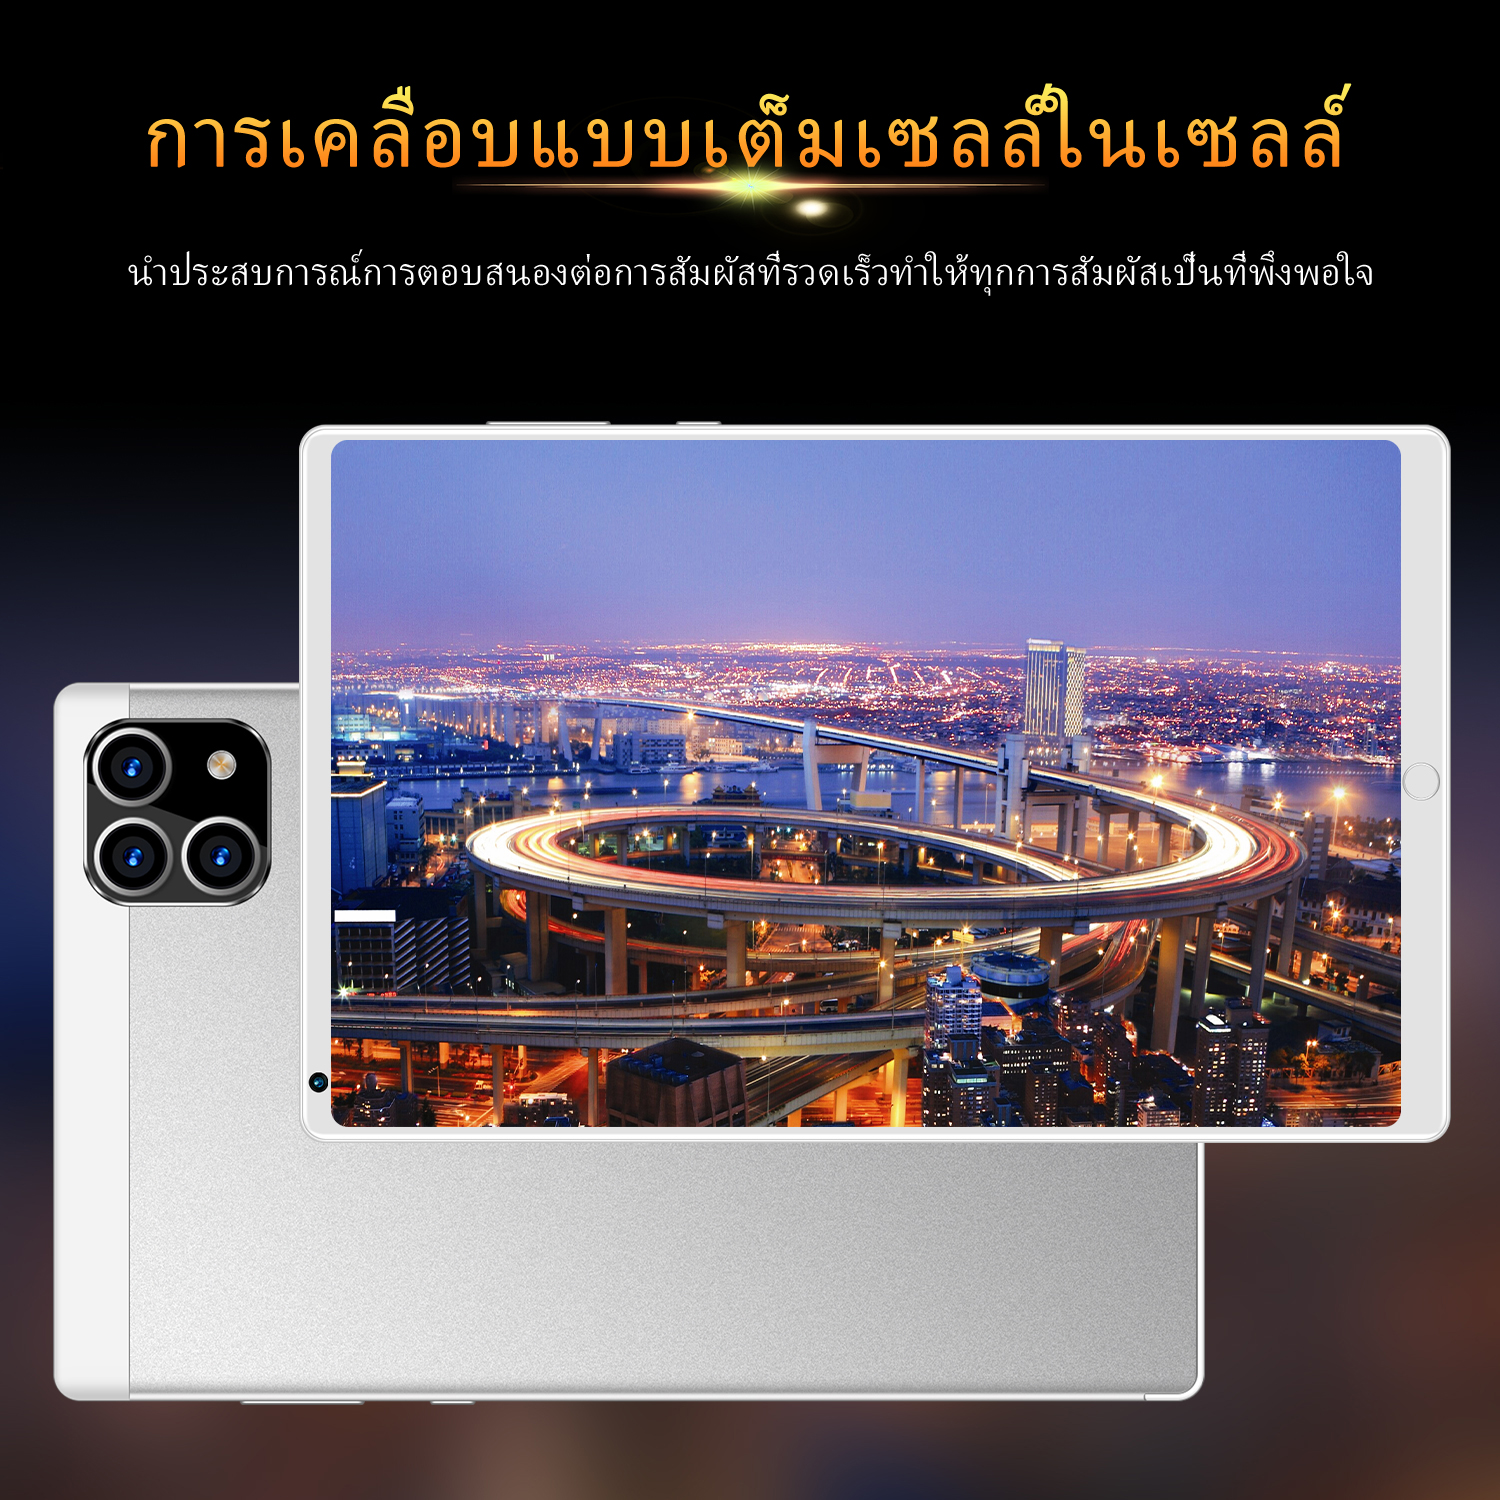 มุมมองเพิ่มเติมของสินค้า Tablet Xiaomi Pad 5 แท็บเล็ต 10.1นิ้ว RAM12G ROM512G โทรได้ แท็บเล็ตถูกๆ แท็บเล็ตราคาถูก Andorid 10.0 Tablet จัดส่งฟรี รองรับภาษาไทย หน่วยประมวลผล 10-core แท็บเล็ตโทรได้ แท็บเล็ตสำหรับเล่นเกมราคาถูก แท็บเล็ตราคาถูกๆ แท็บเล็ตราคาถูกรุ่นล่าสุด ไอเเพ็ด